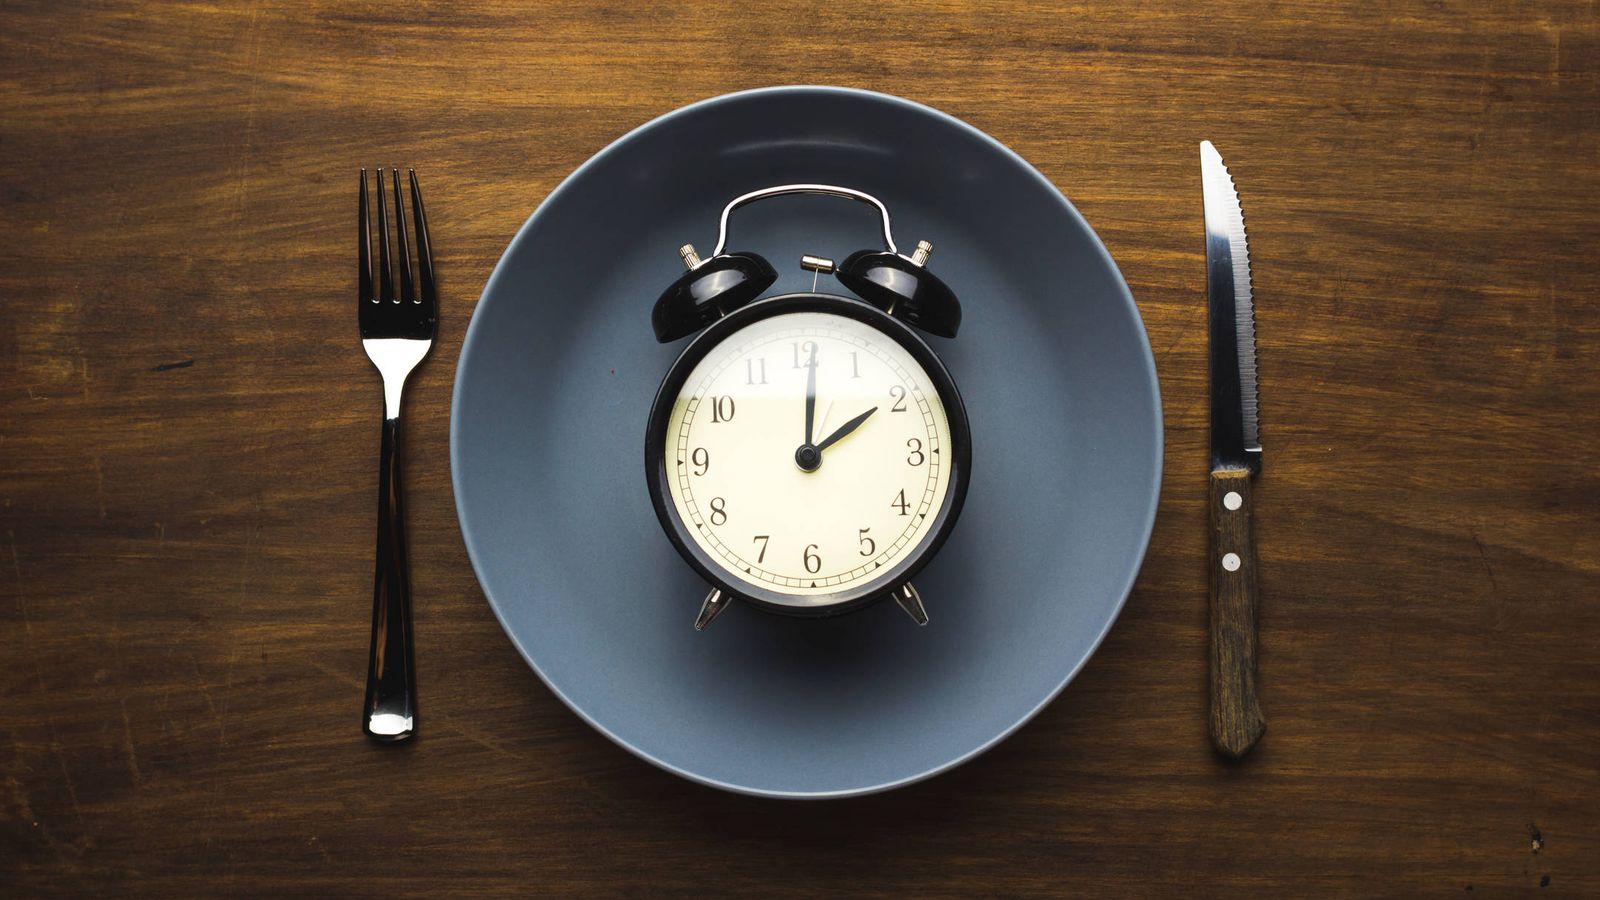 Foto: El tiempo de vida en un plato. (iStock)